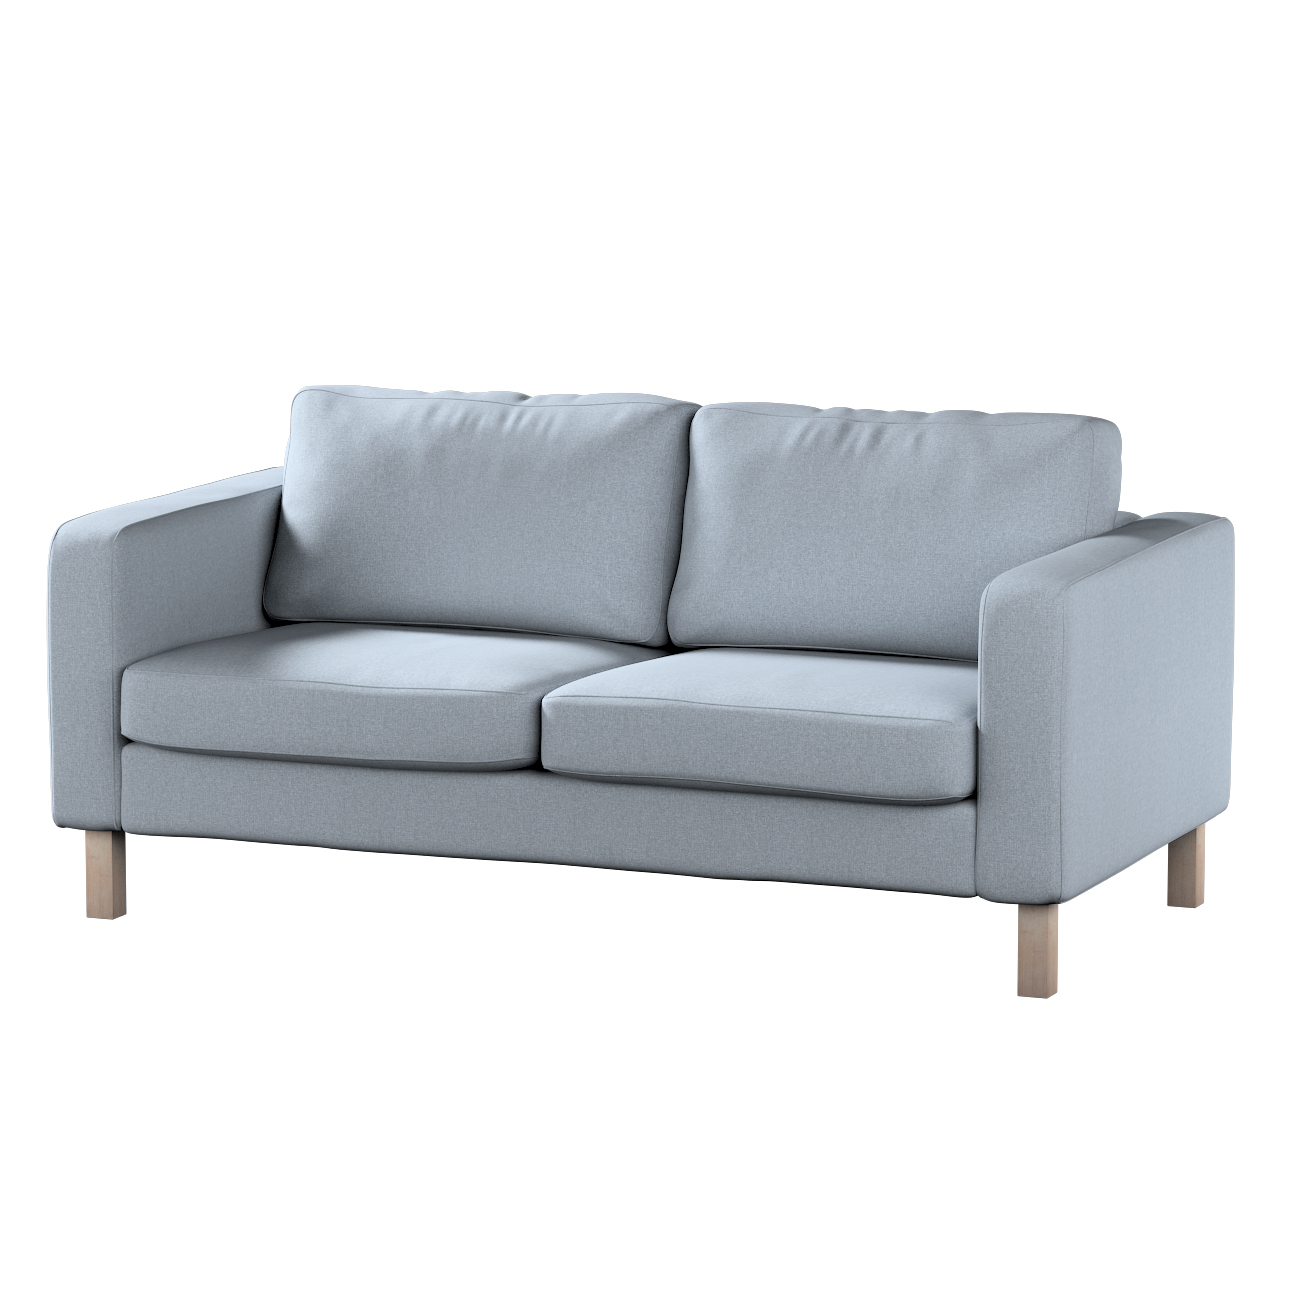 Bezug für Karlstad 2-Sitzer Sofa nicht ausklappbar, steingrau, Sofahusse, K günstig online kaufen